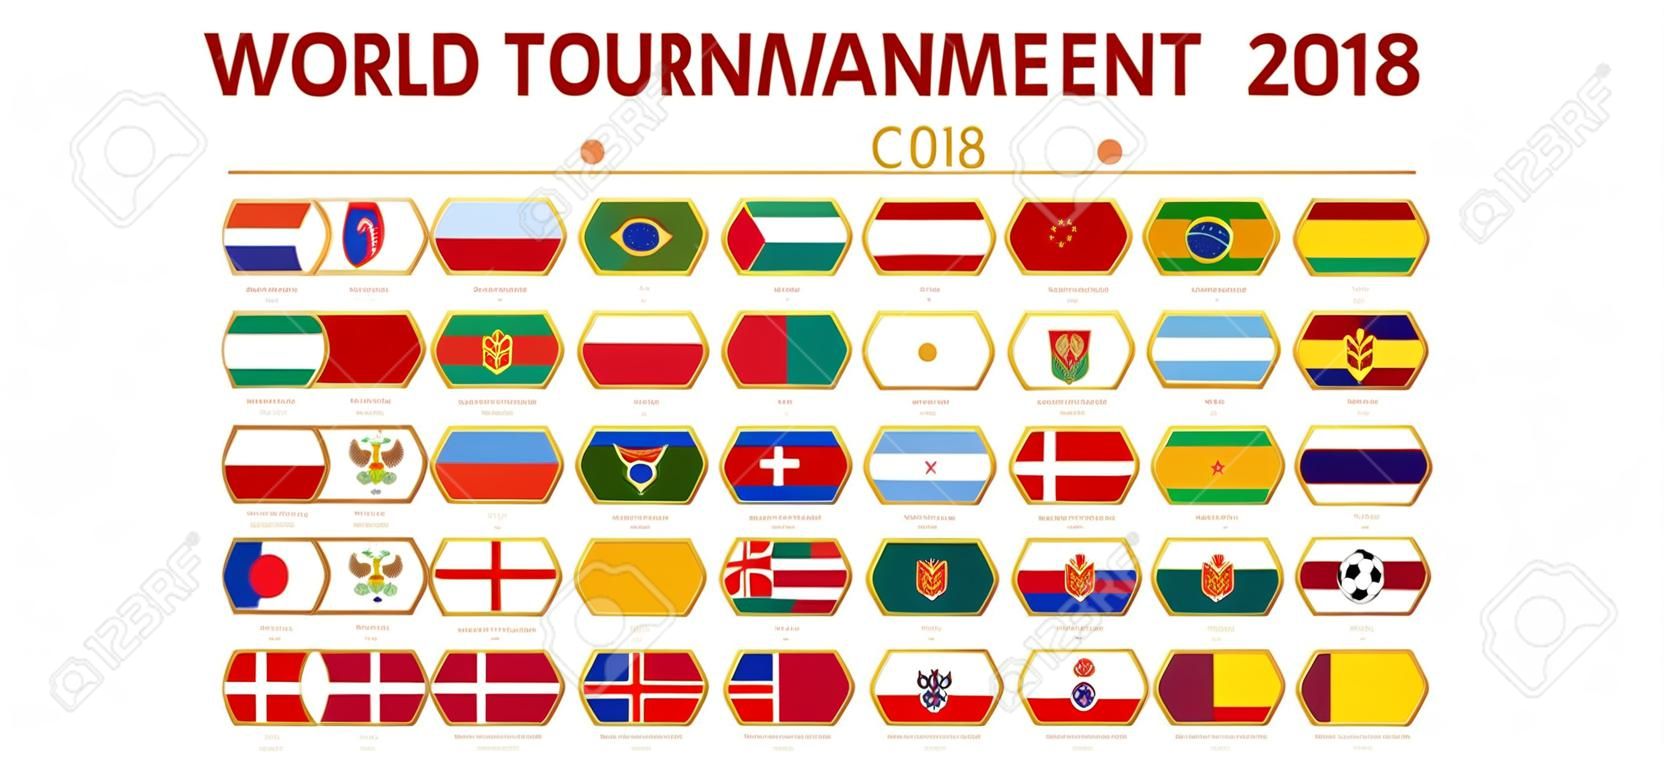 Tournoi mondial de football 2018 en Russie, drapeaux de tous les participants par groupe